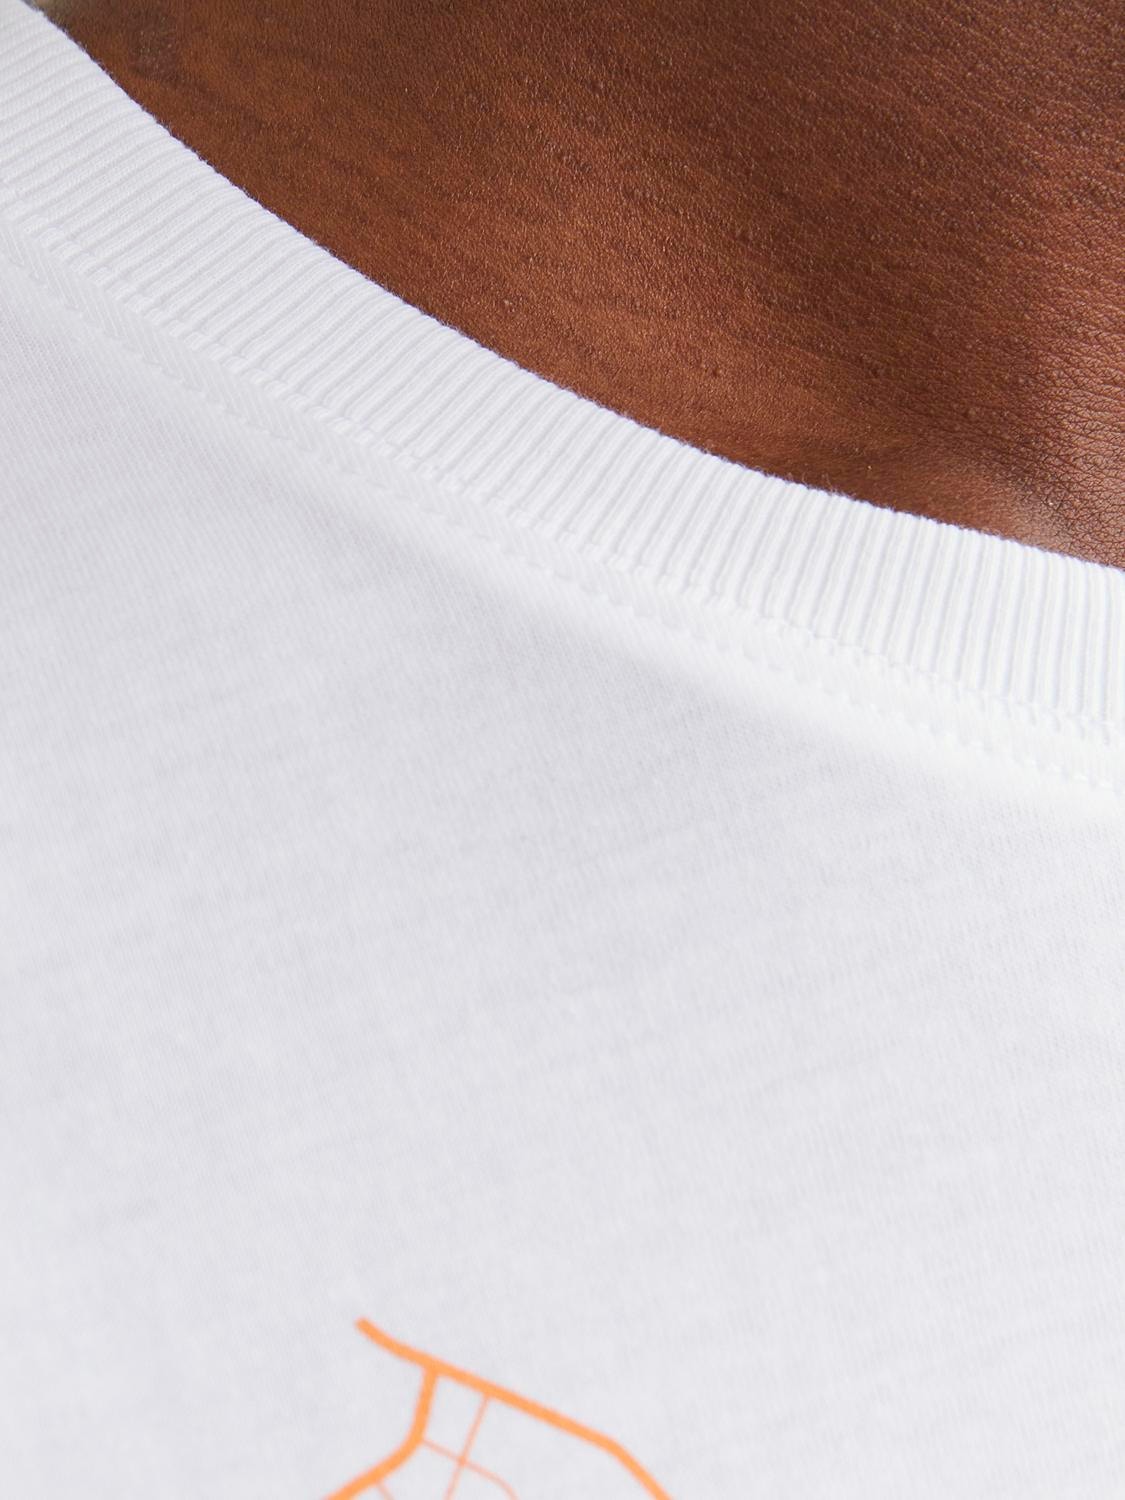 Jack & Jones T-shirt Imprimé Col rond -White - 12252376